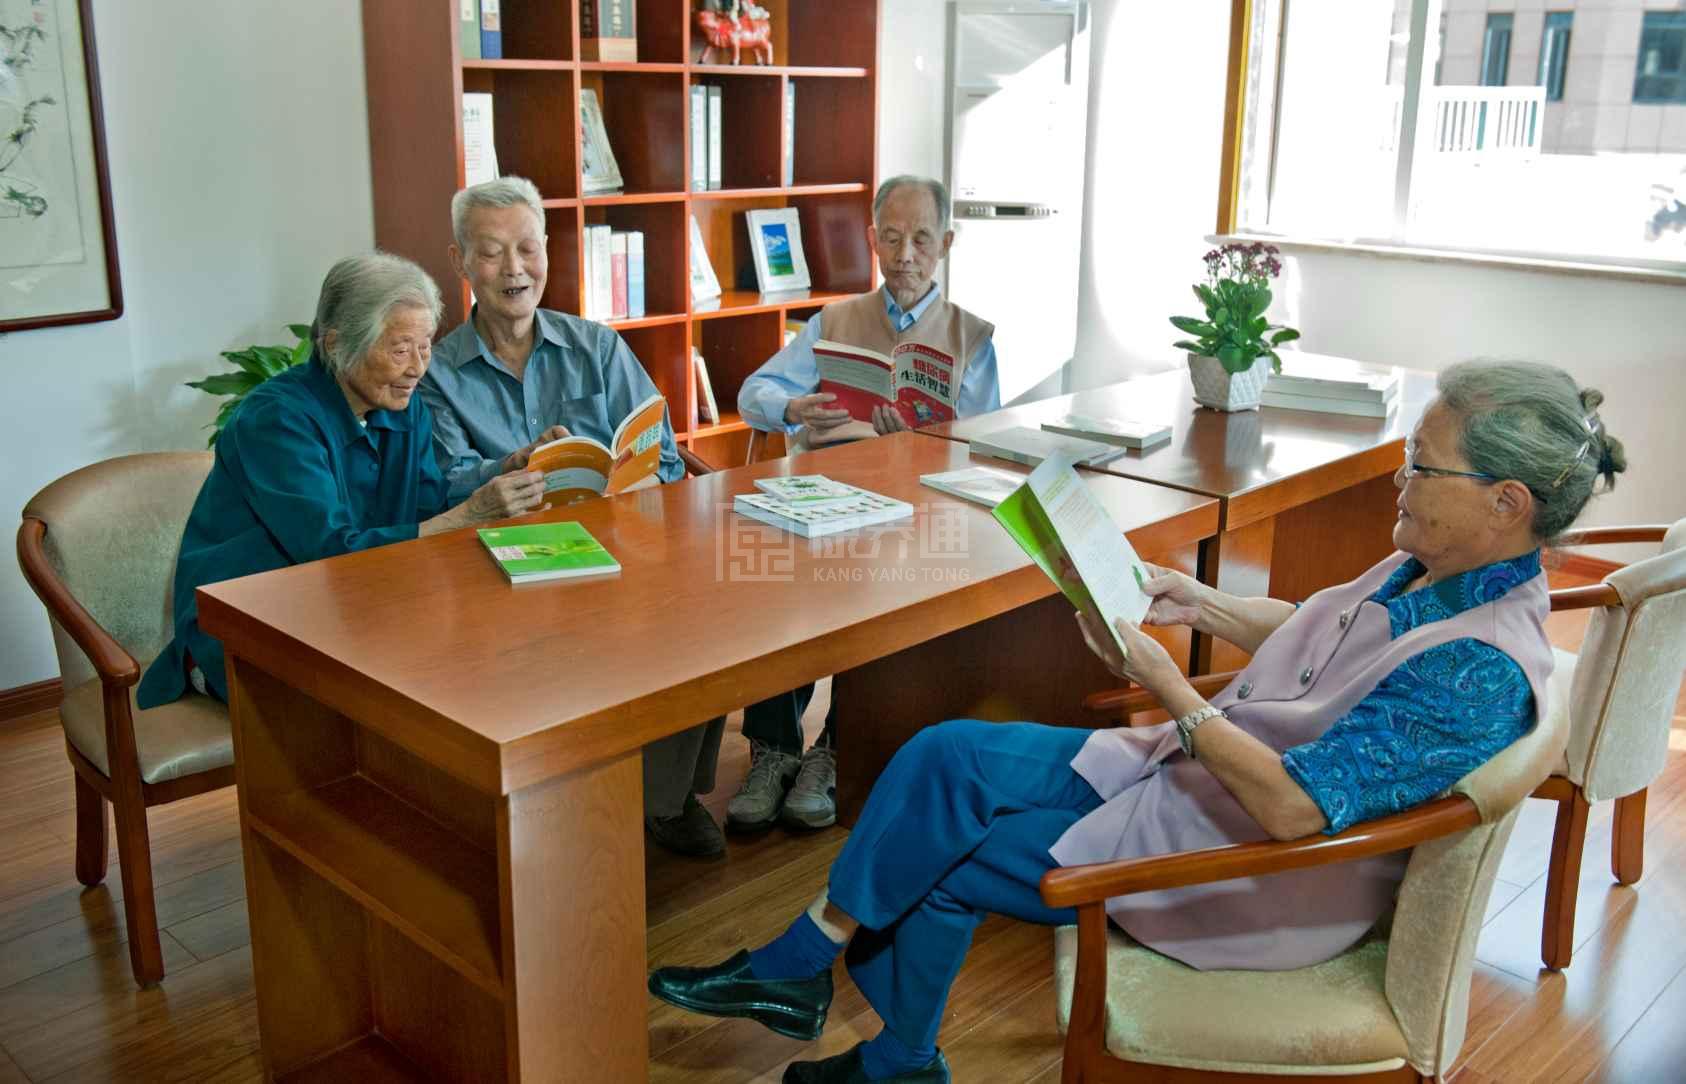 合肥安兴太阳湾老年公寓服务项目图4让长者主动而自立地生活